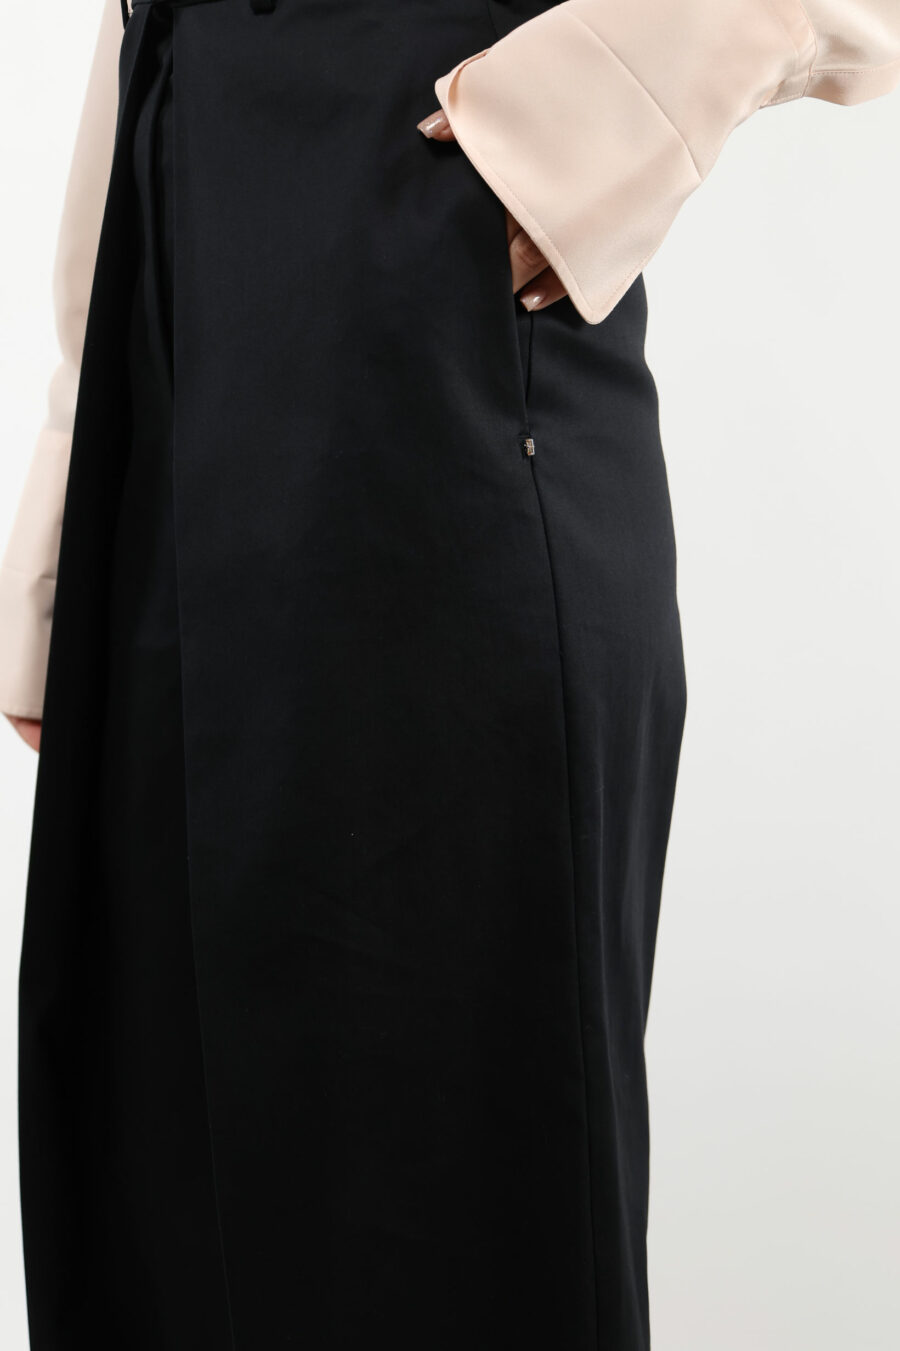 Pantalón negro de capas ancho - 109390